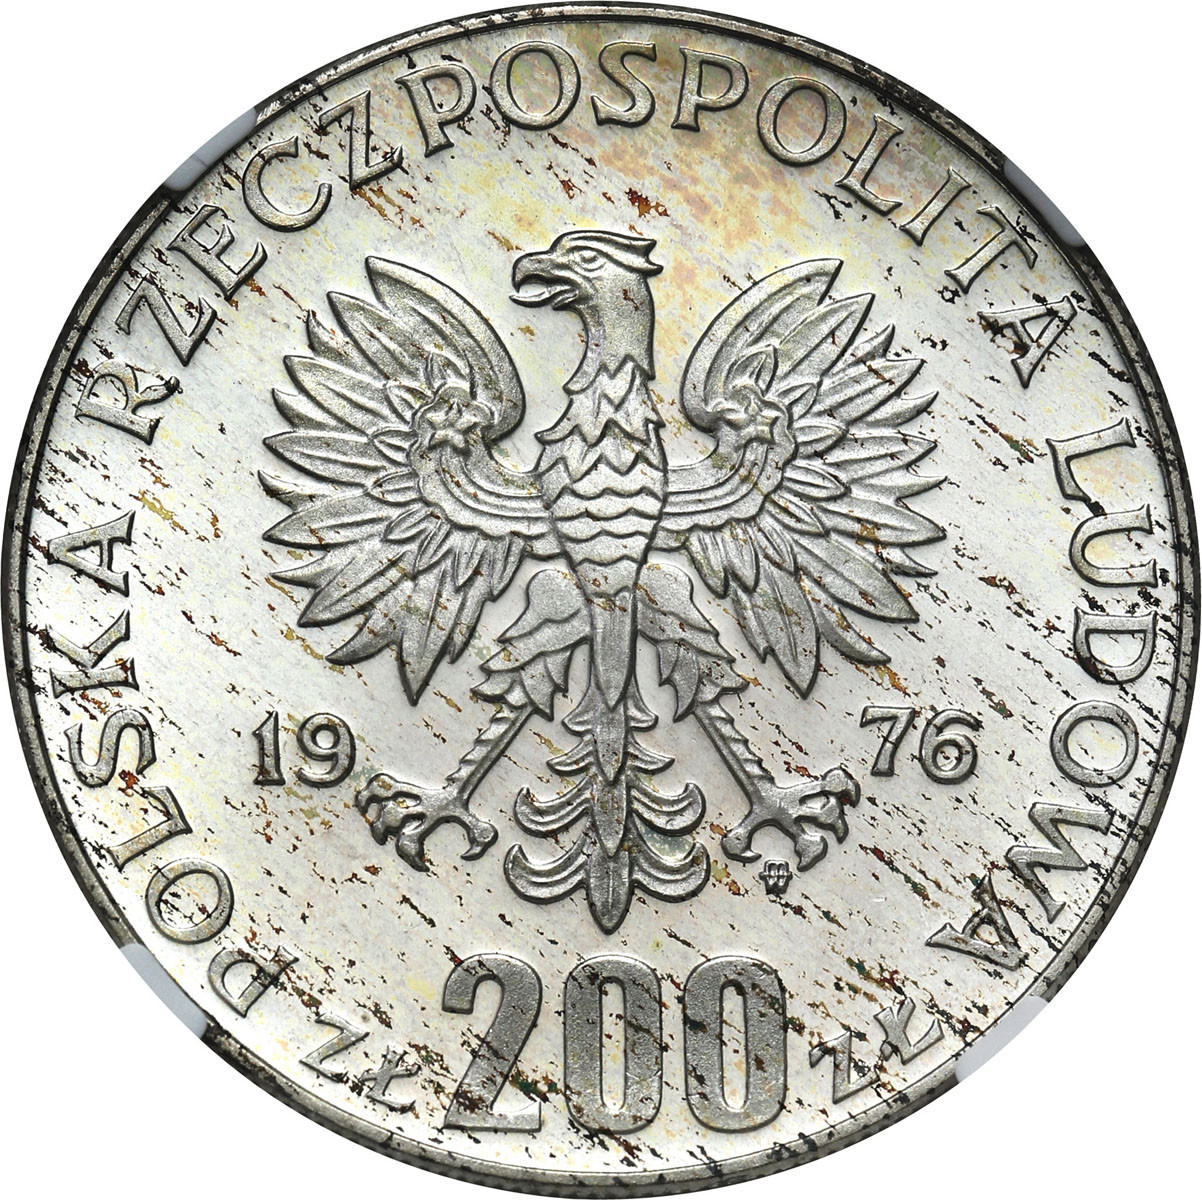 PRL. 200 złotych 1976 Igrzyska XXI Olimpiady - Stempel Lustrzany - NGC PF66 CAMEO